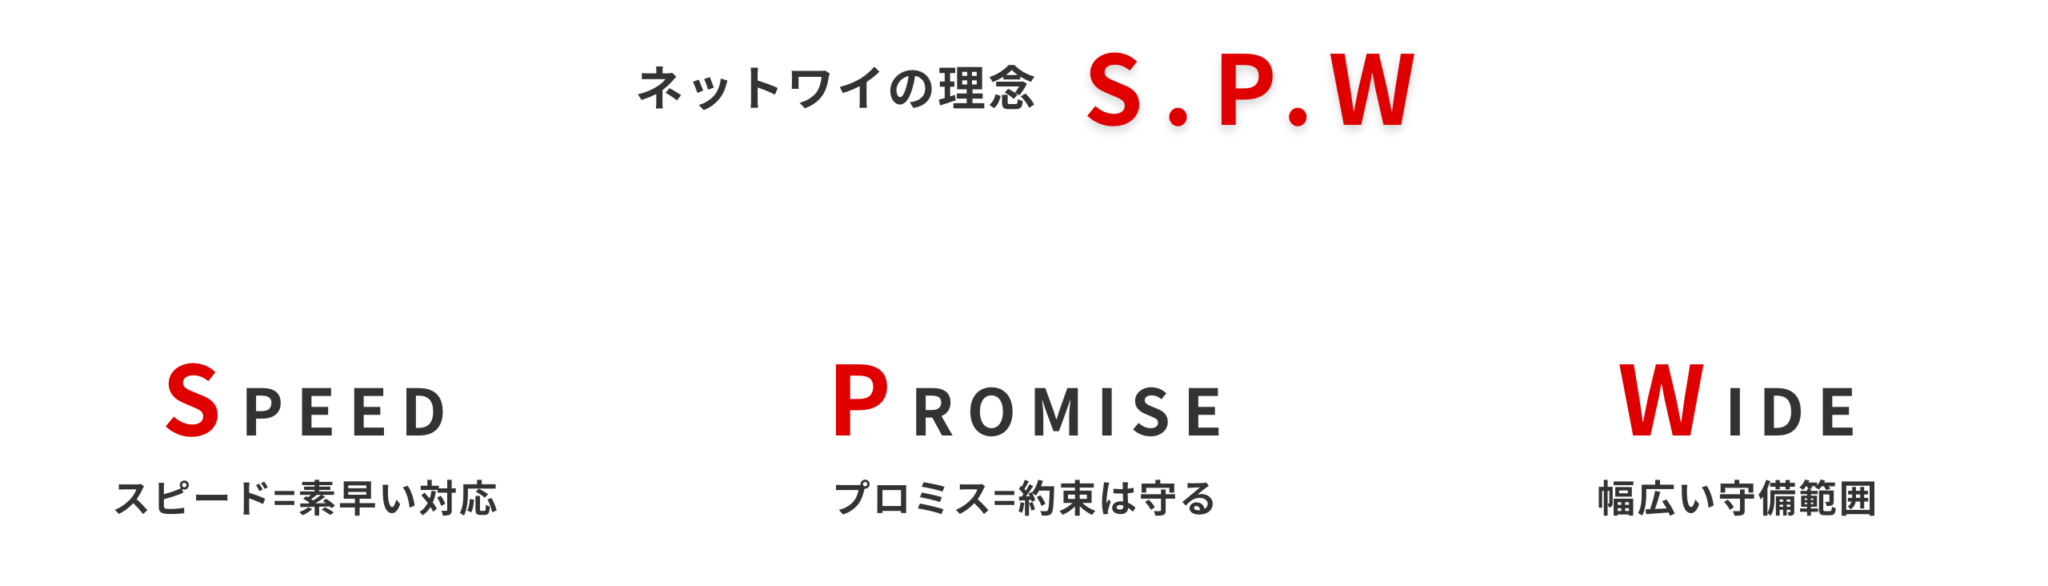 ネットワイの理念　S.P.W。SPEED（スピード＝素早い対応）PROMISE（プロミス＝約束は守る）WIDE（ワイド＝幅広い守備範囲）